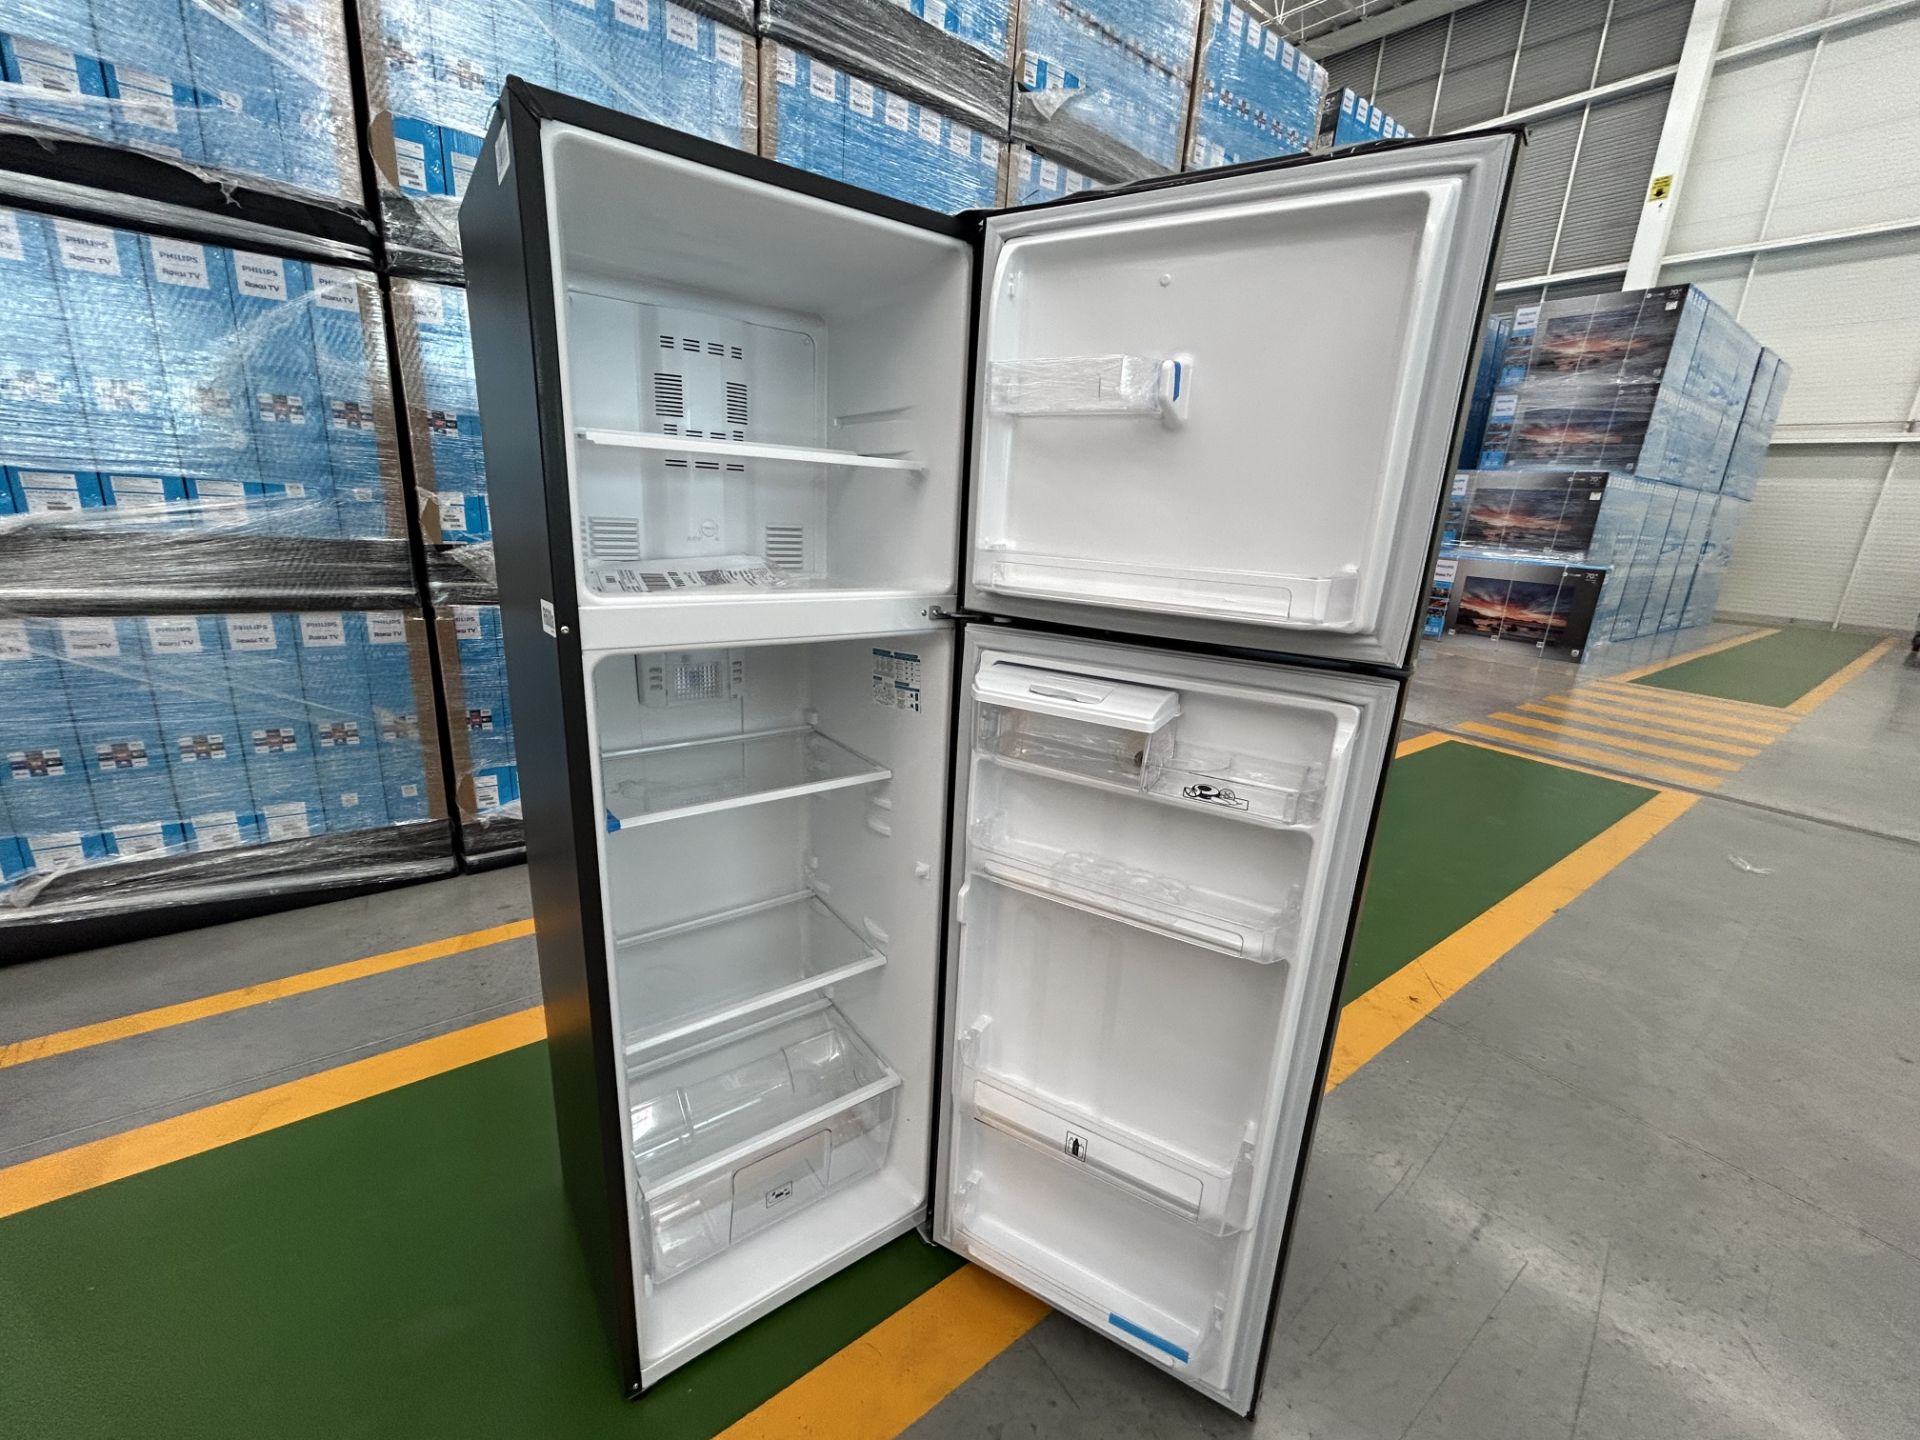 Lote de 2 Refrigeradores contiene: 1 Refrigerador con dispensador de agua Marca MABE, Modelo RMA300 - Image 3 of 4